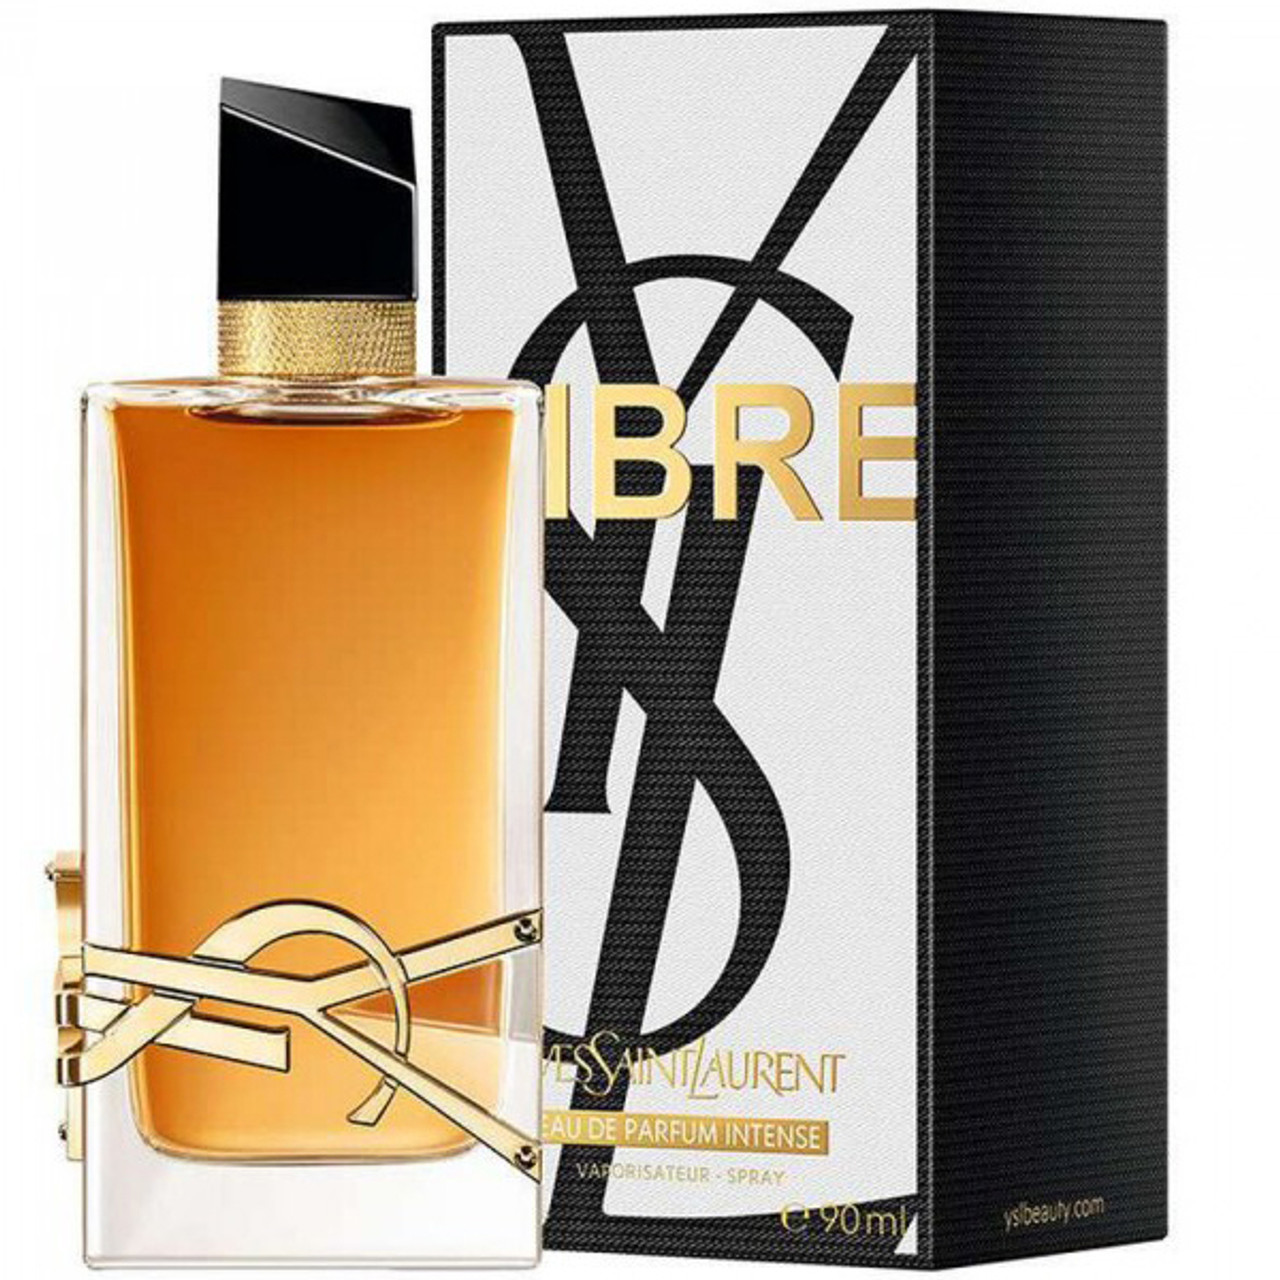 Buy YVES SAINT LAURENT Libre Eau De Parfum For Women